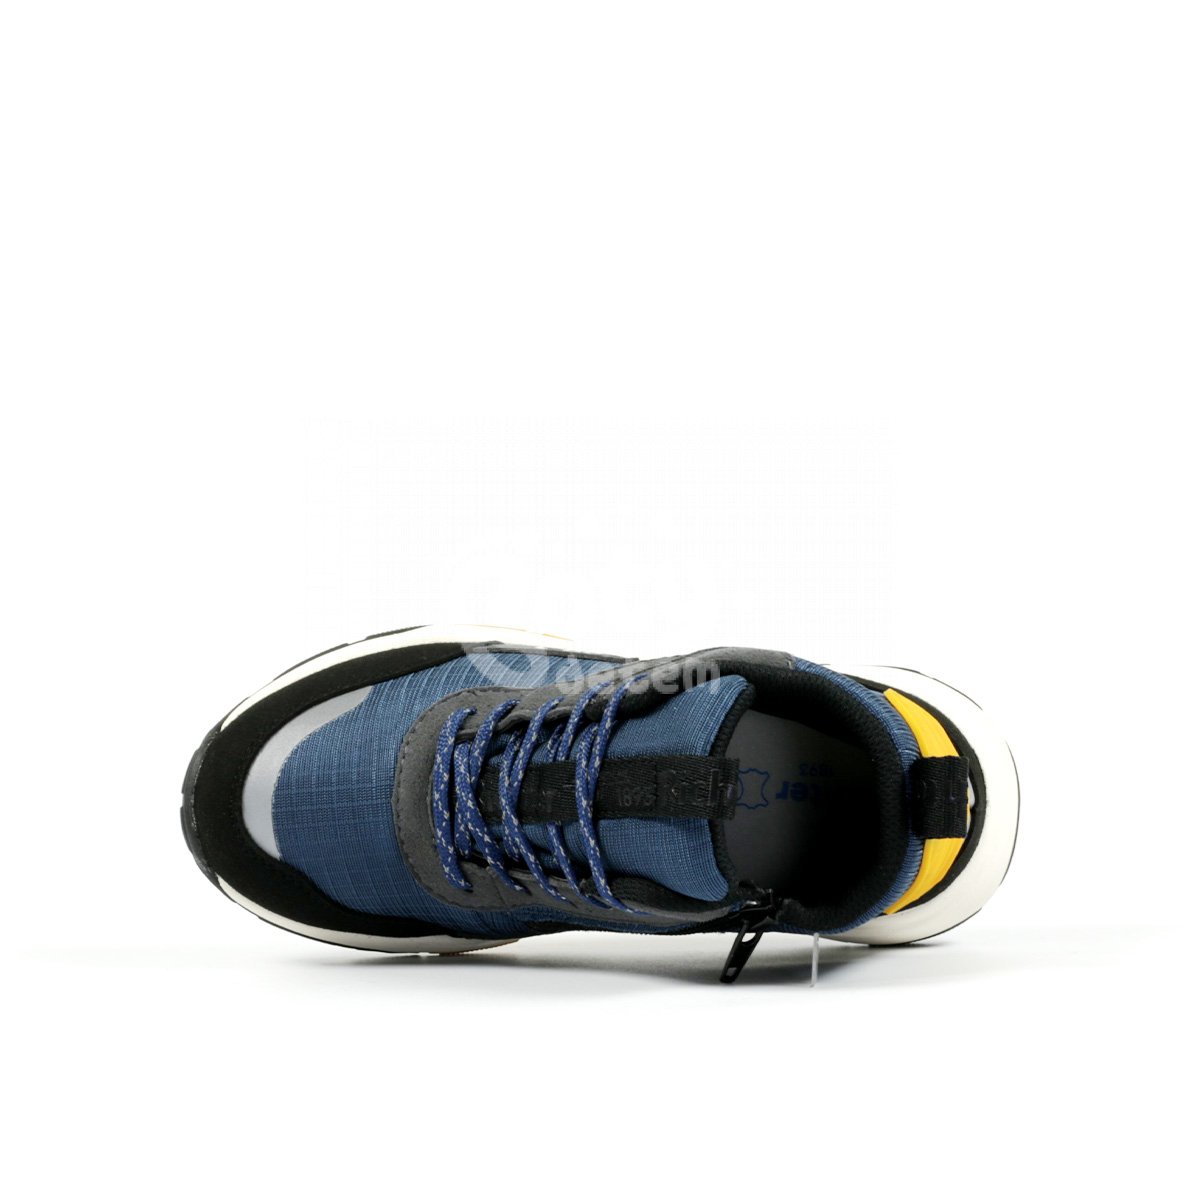 Sportovní obuv Richter 7546-8171-7201 modrá